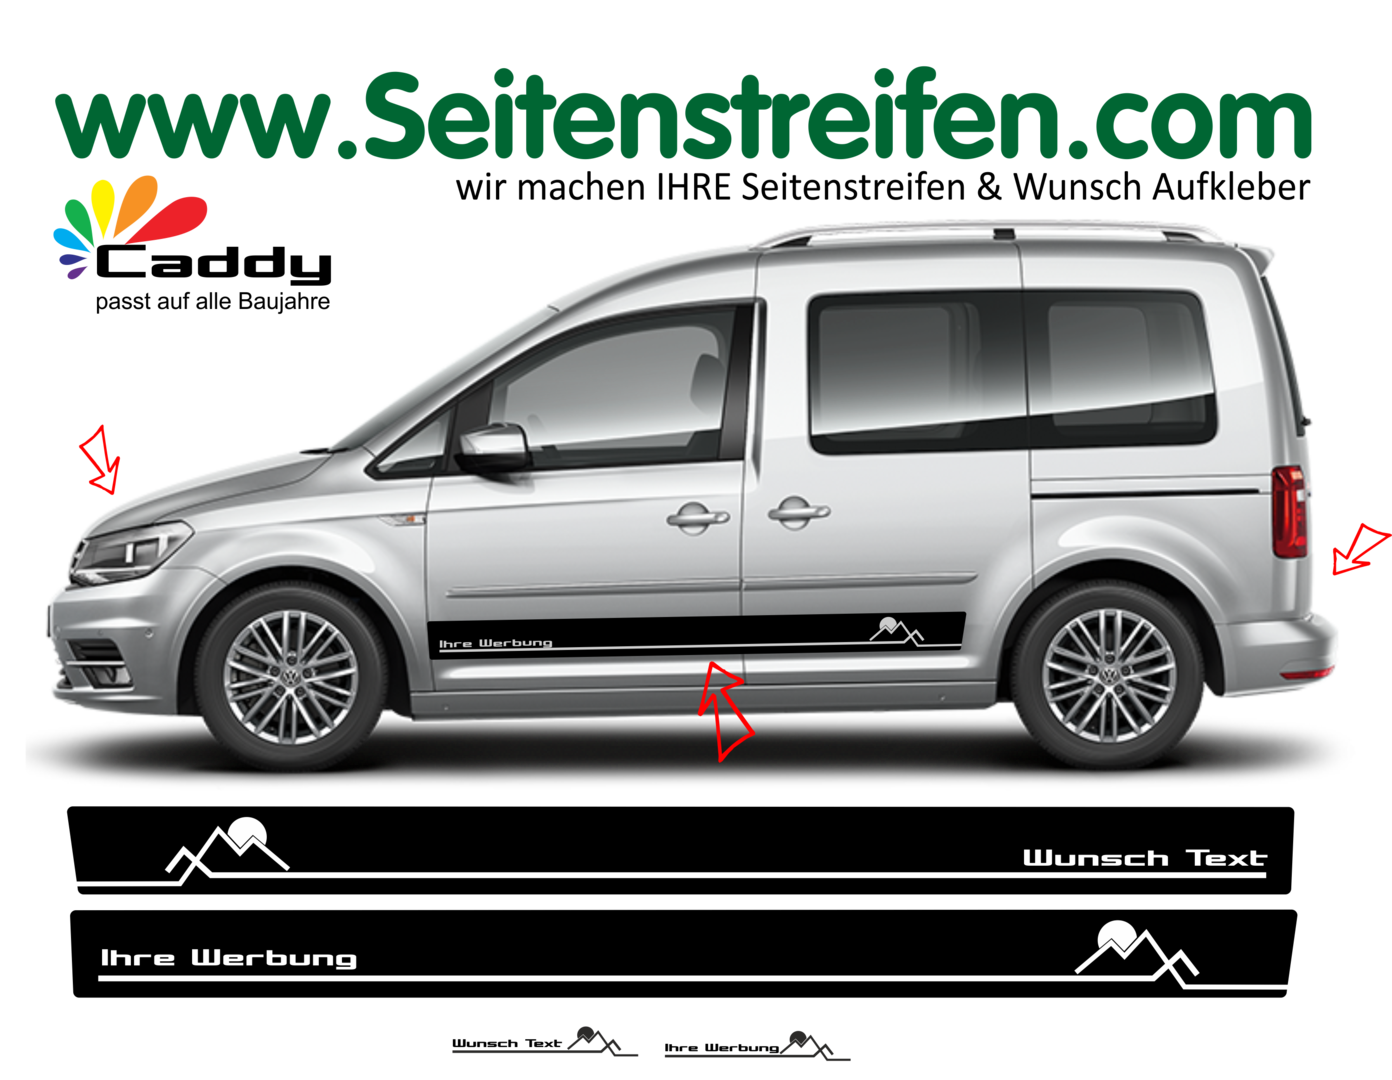 VW Caddy - Montagne Sole Escursione adesivi strisce laterali adesive auto sticker - 1072